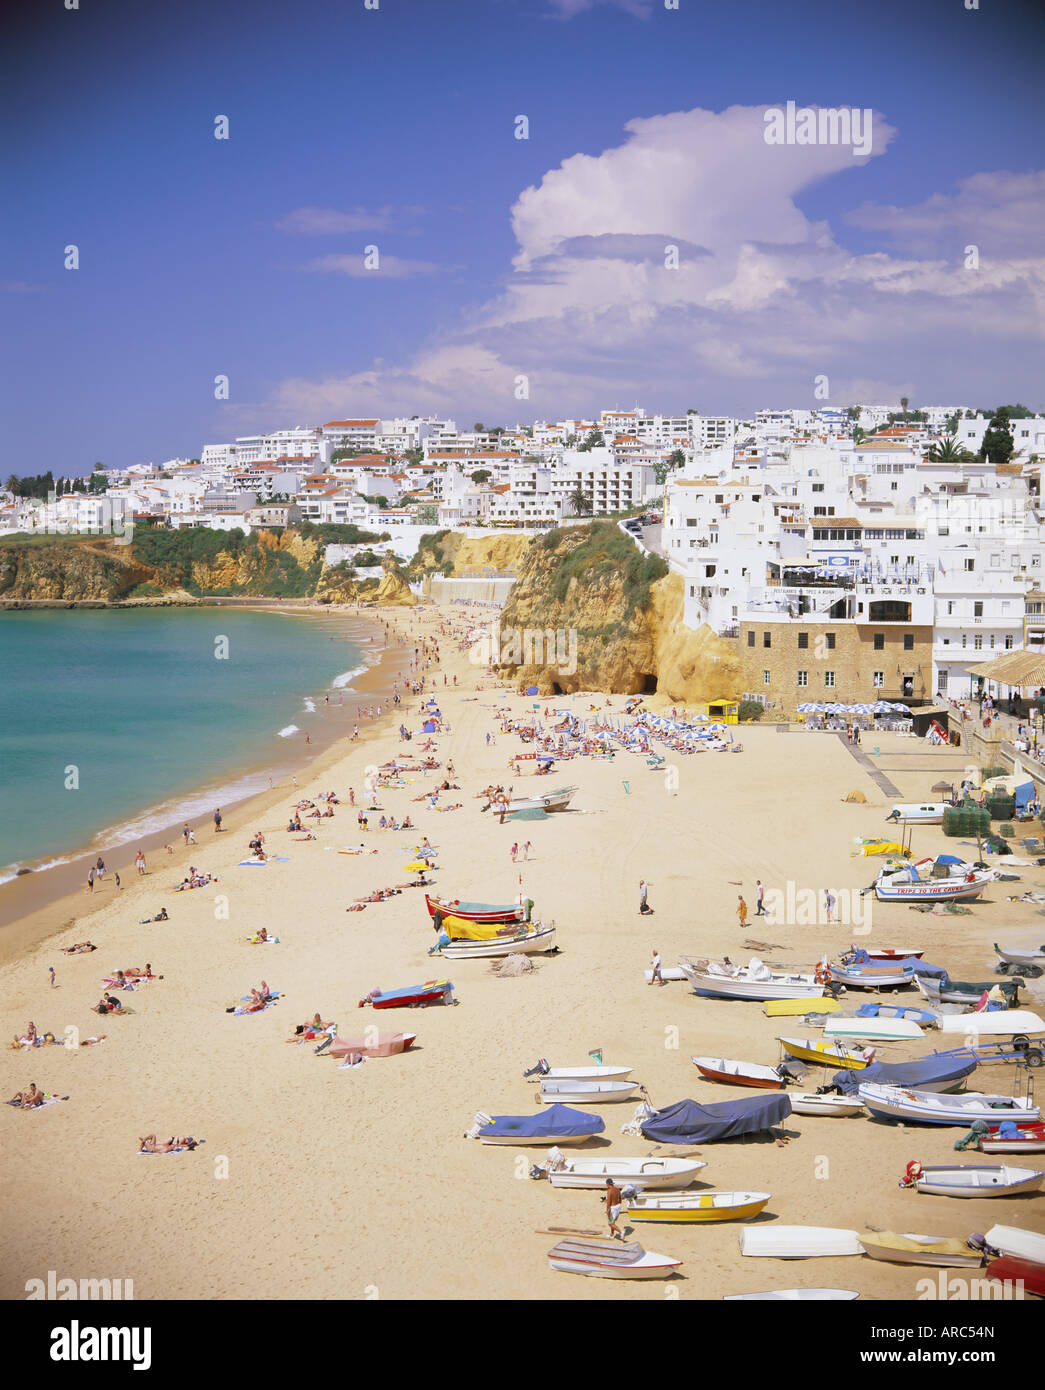 La spiaggia e la città, Albufeira, Algarve, Portogallo, Europa Foto Stock